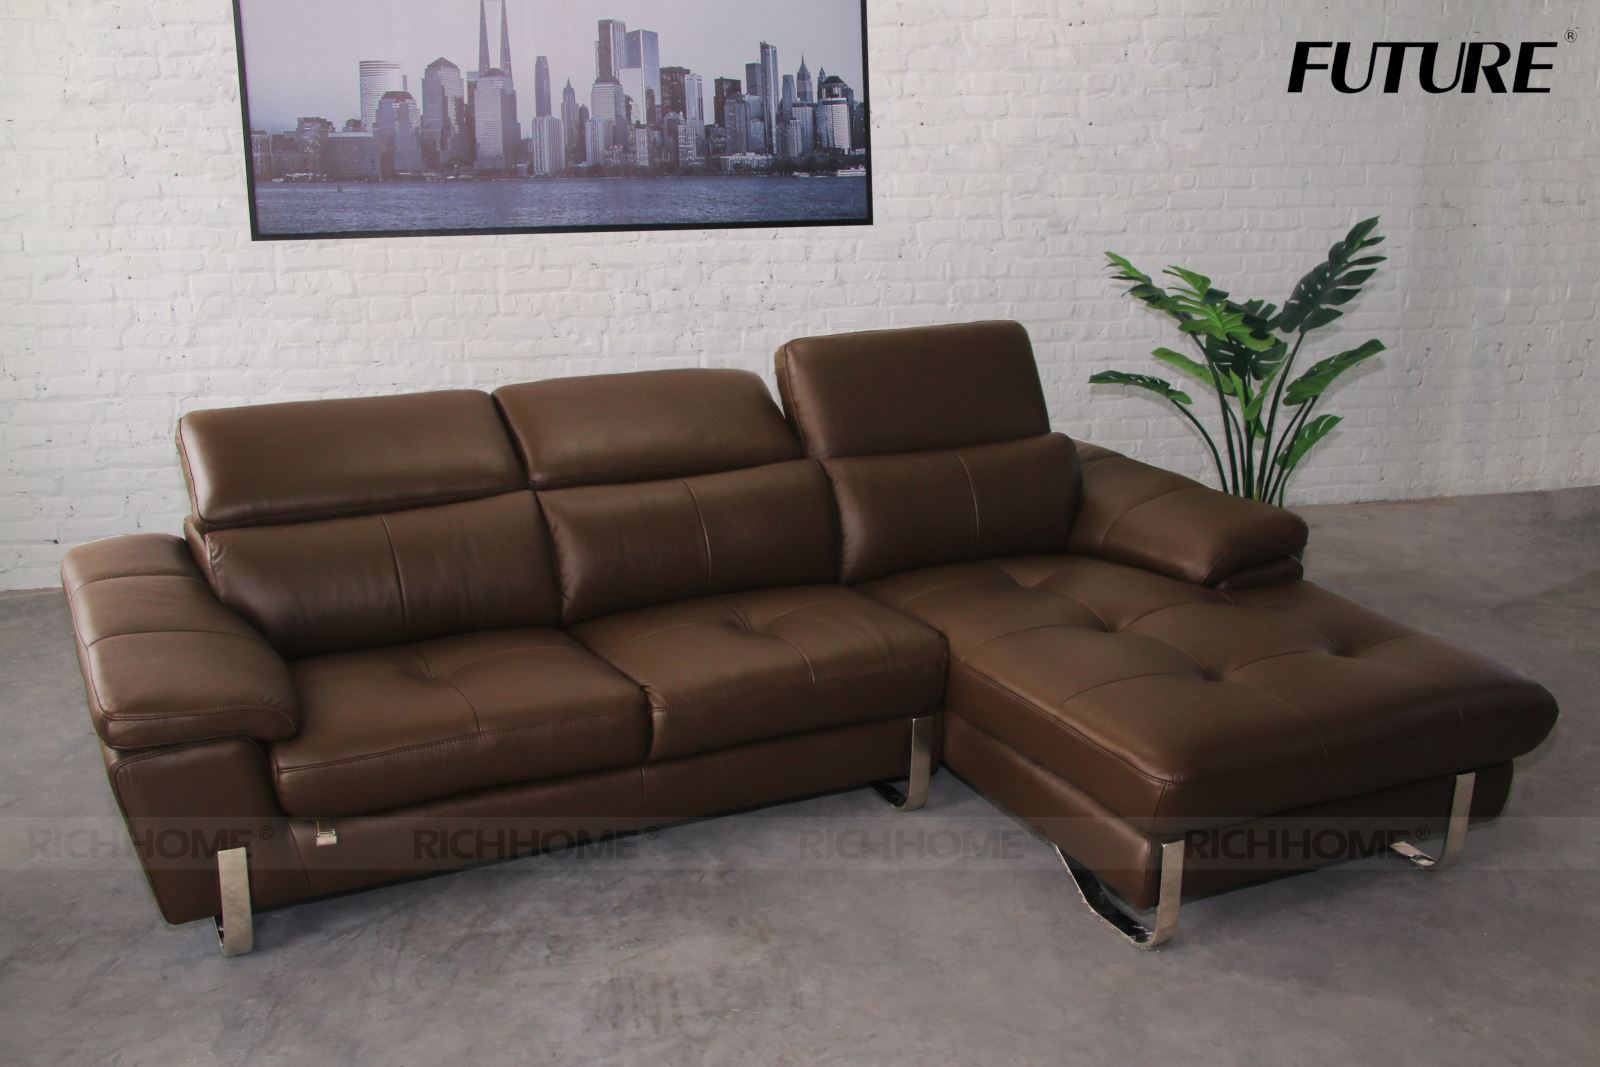 Mua ngay các mẫu sofa góc nhập khẩu hoàn hảo và độc đáo - Ảnh 2